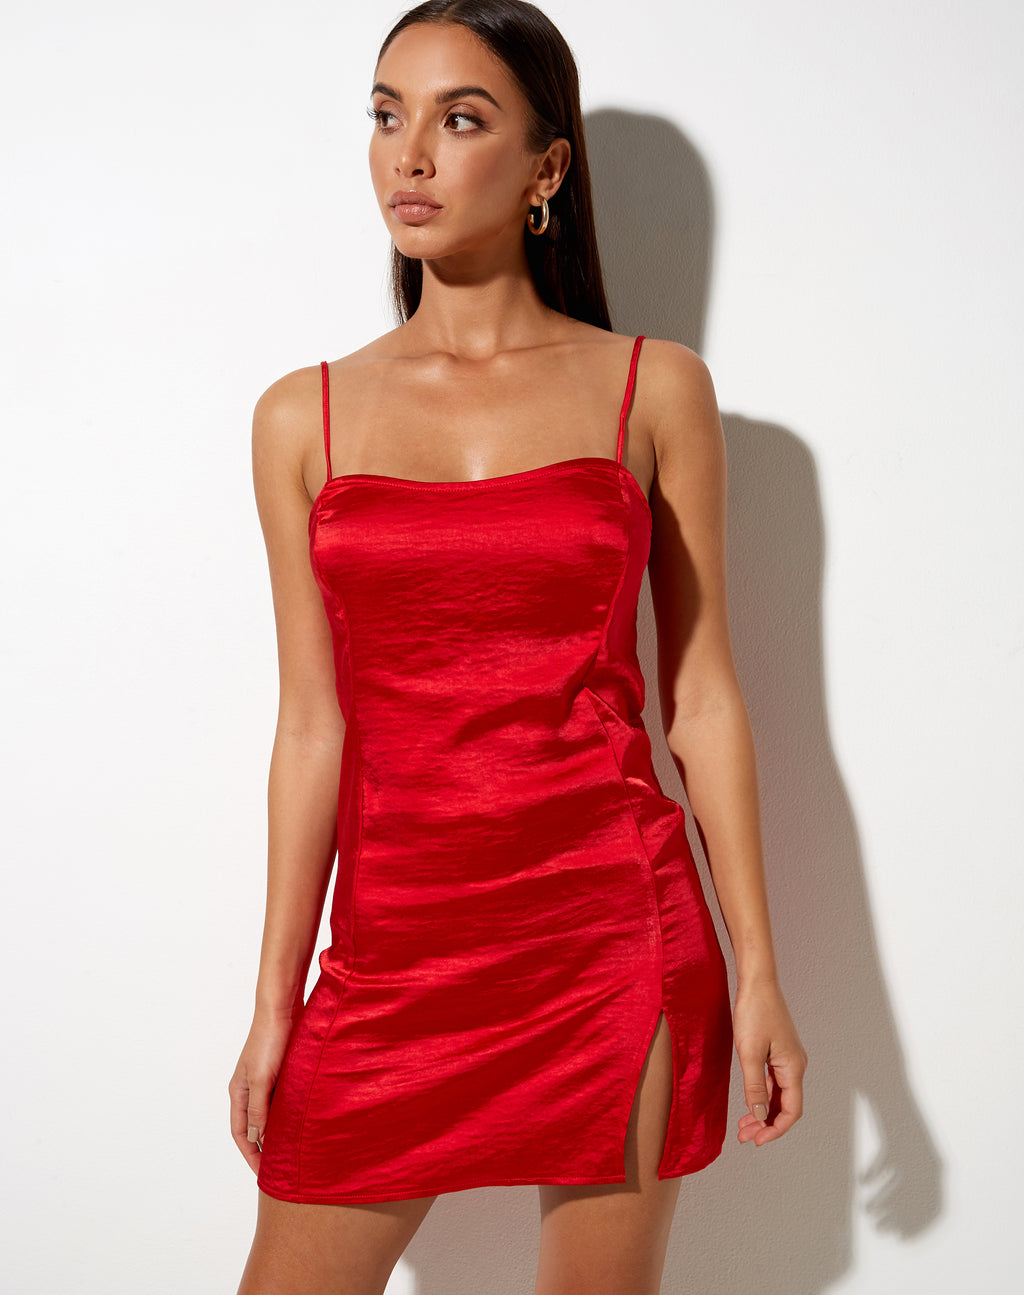 Zenda Mini Dress in Satin Red